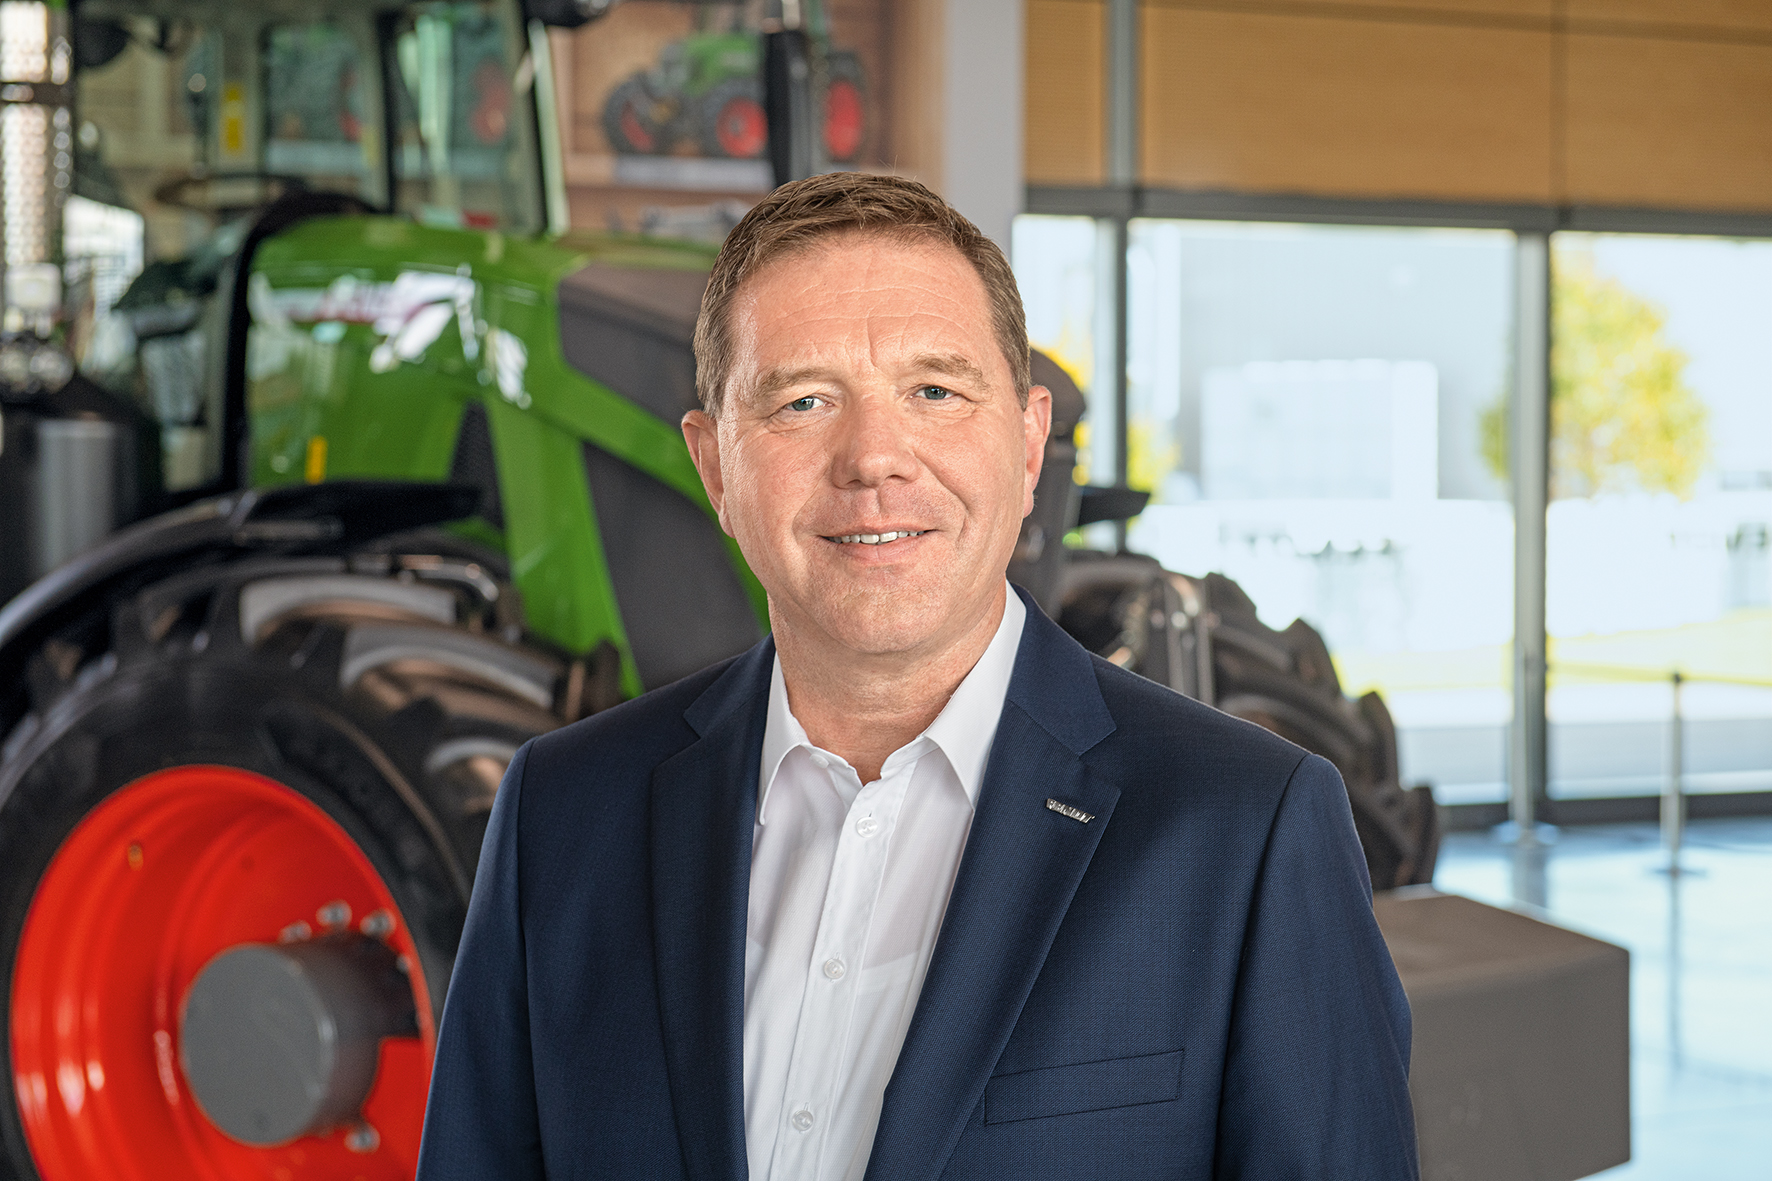 Christoph Grblinghoff ocupar a partir del 1 enero de 2020 el puesto de presidente de la Junta Directiva de AGCO/Fendt